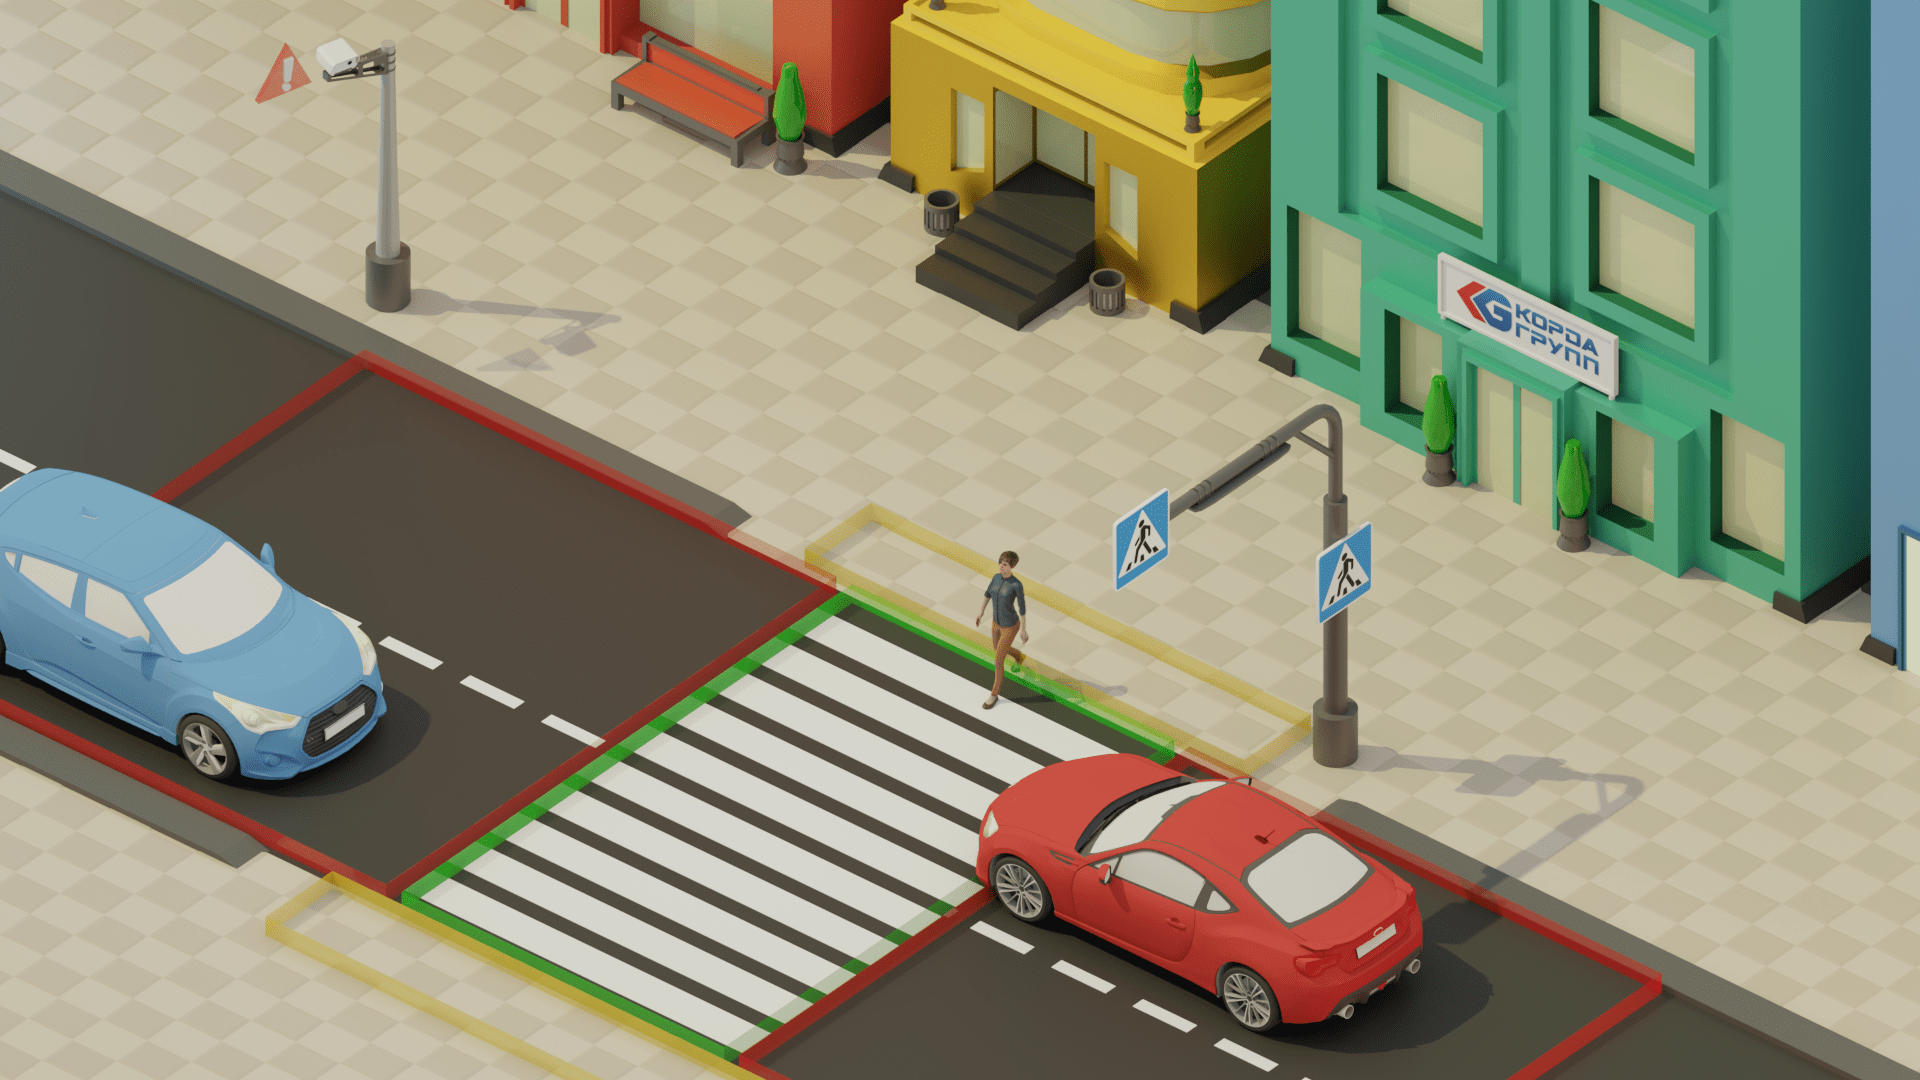 Unregulated pedestrian crossings